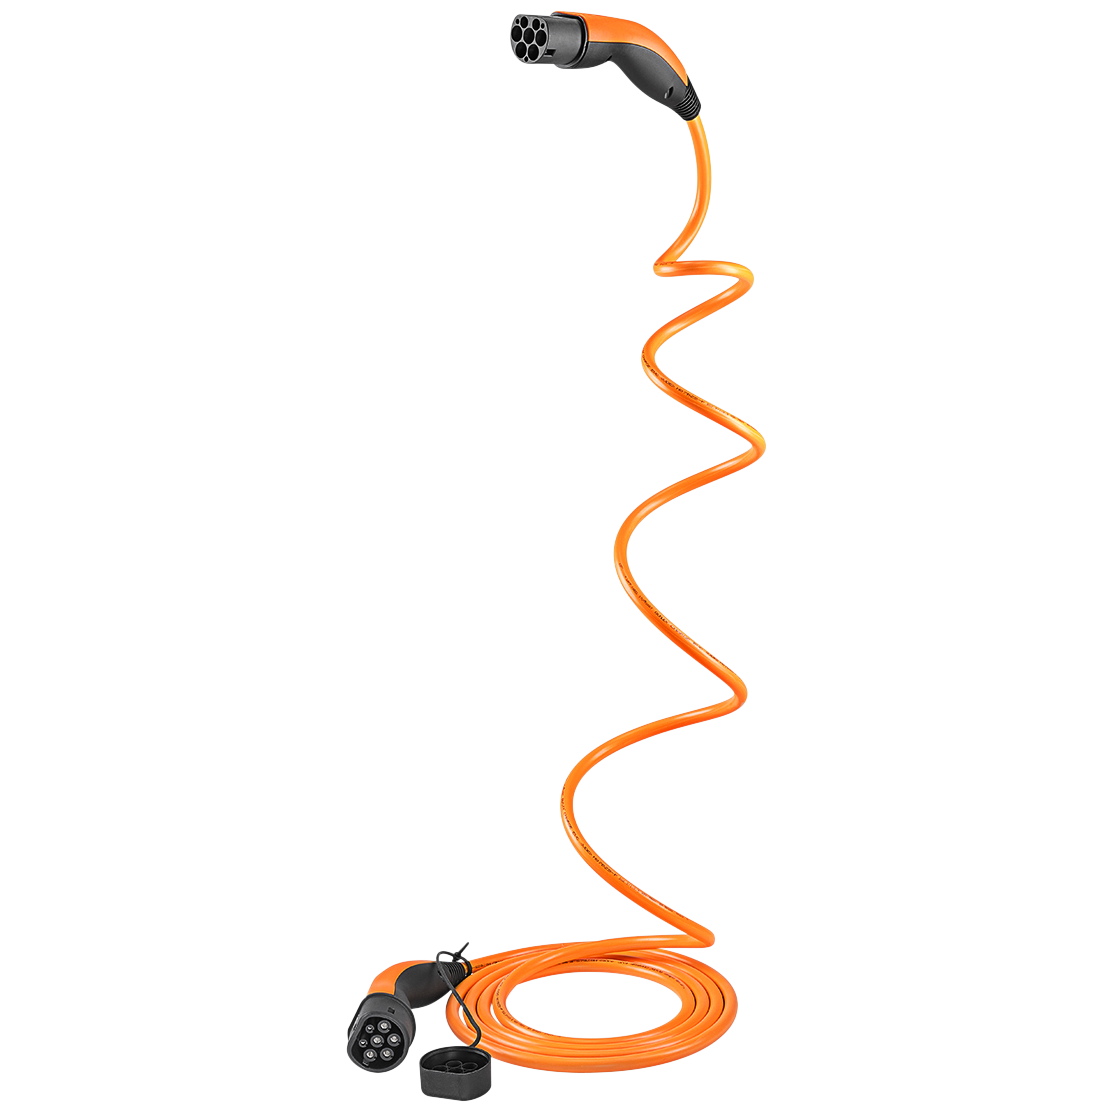 Chargement de câble de type 2 à la forme en spirale de type 2 pour voiture  électrique (22 kW / 32 A / 3-Phase) – E-Autos.de/shop